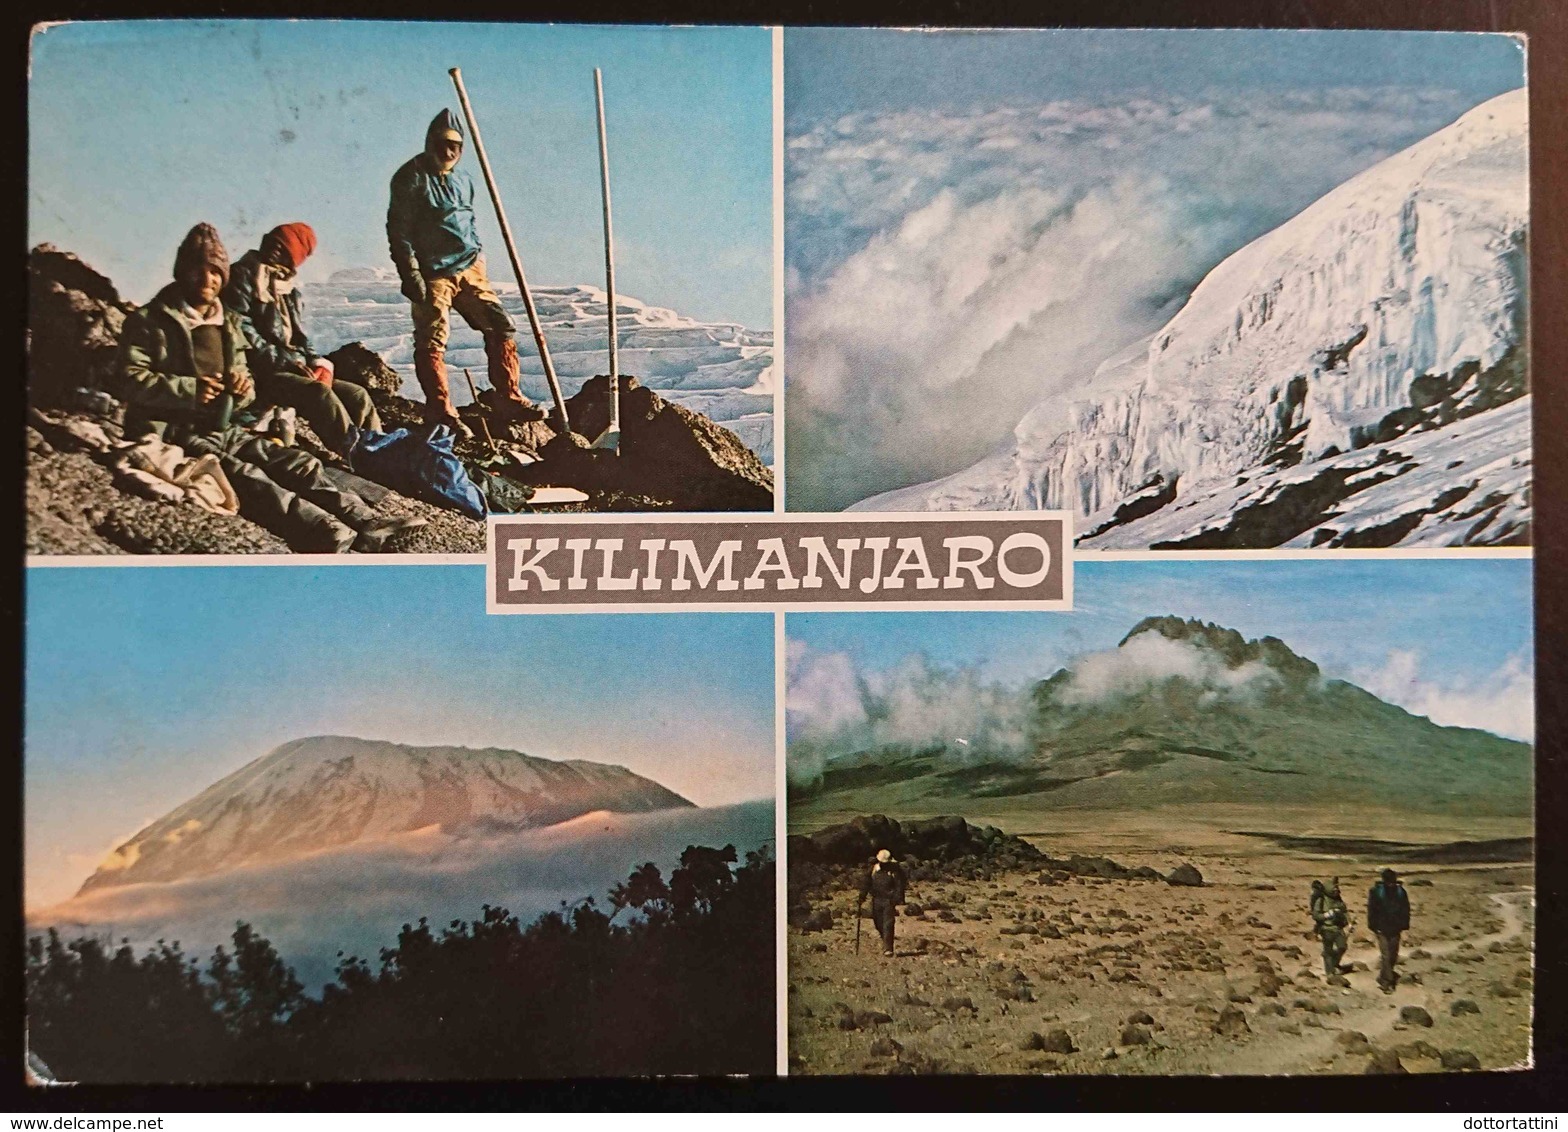 KILIMANJARO, PEAK OF AFRICA - Tanzania - Vg - Tanzania